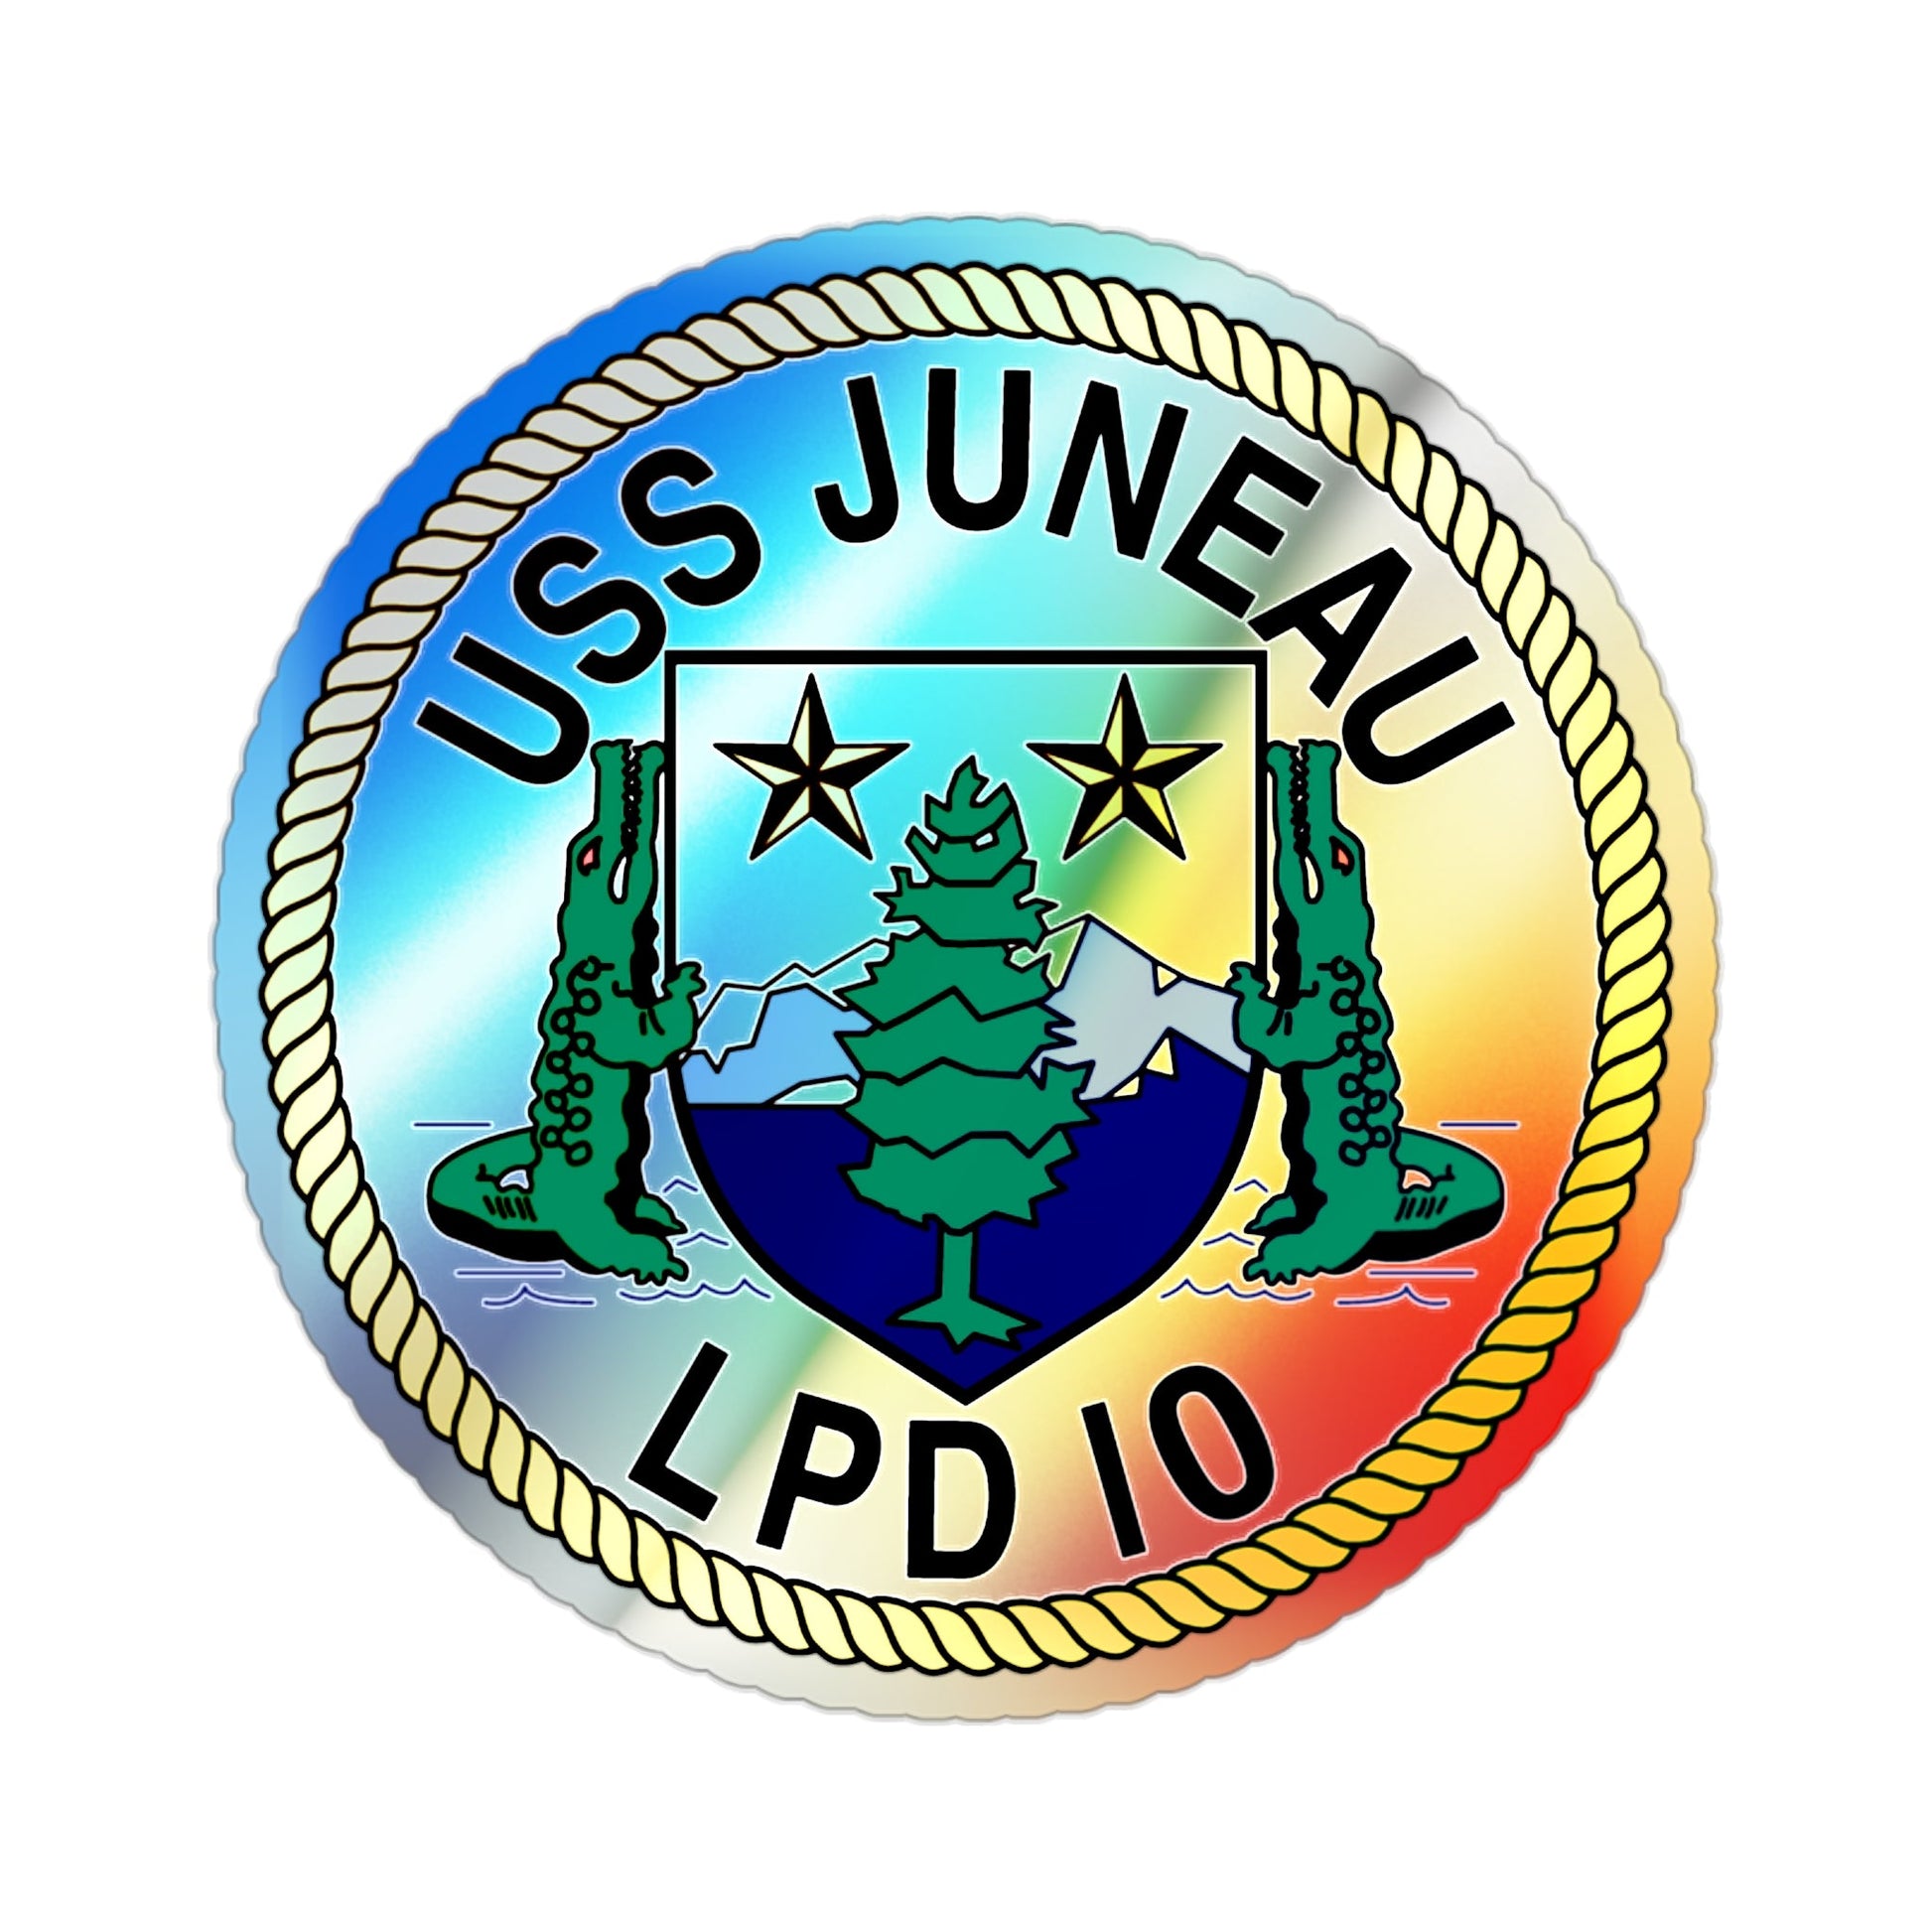 USS Juneau LPD 10 (U.S. Navy) Holographic STICKER Die-Cut Vinyl Decal-2 Inch-The Sticker Space